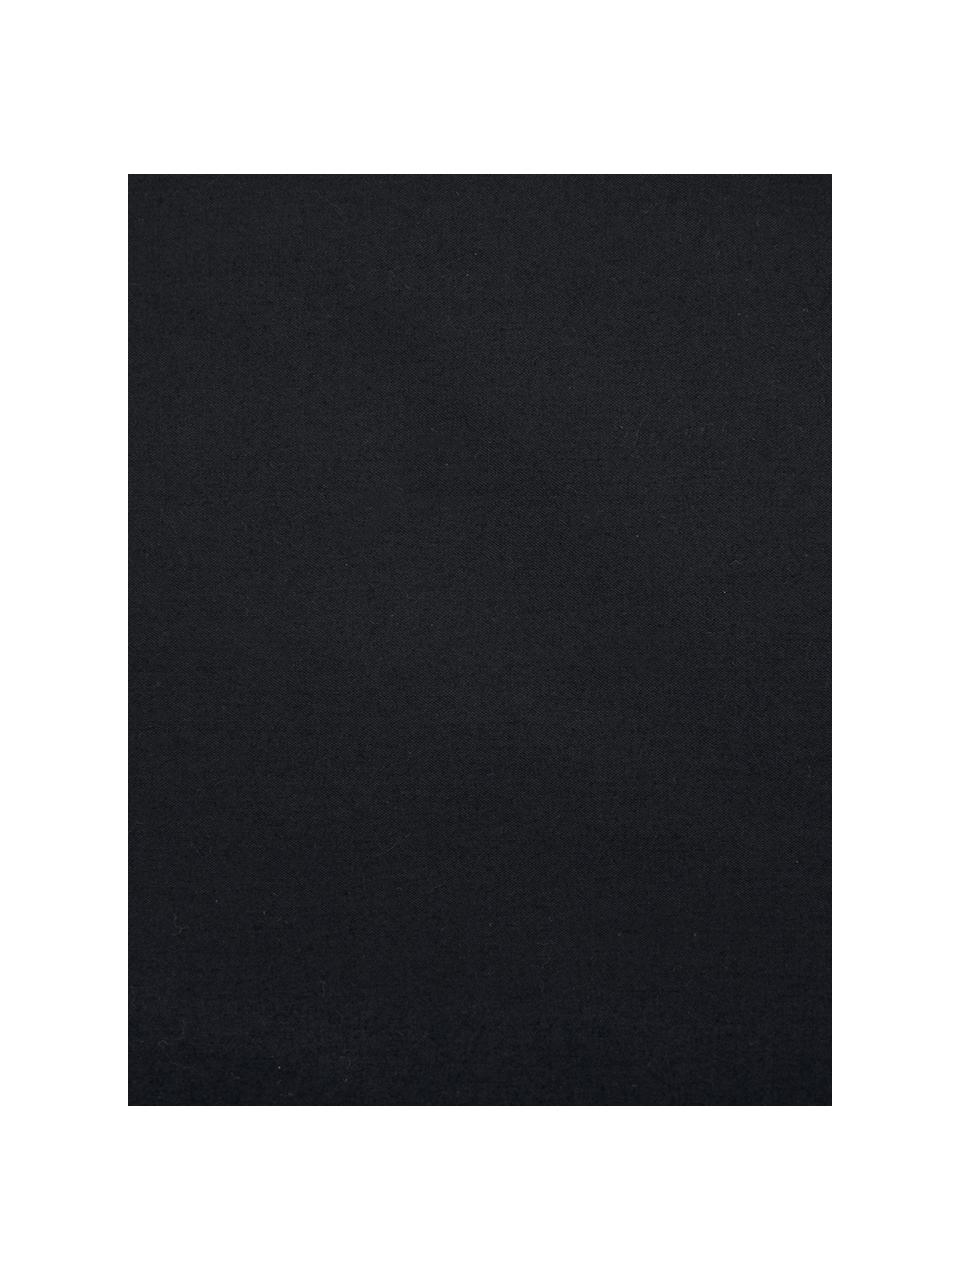 Taie d'oreiller 65x65 percale à imprimé marbré Malin, 2 pièces, Noir, blanc, 65 x 65 cm